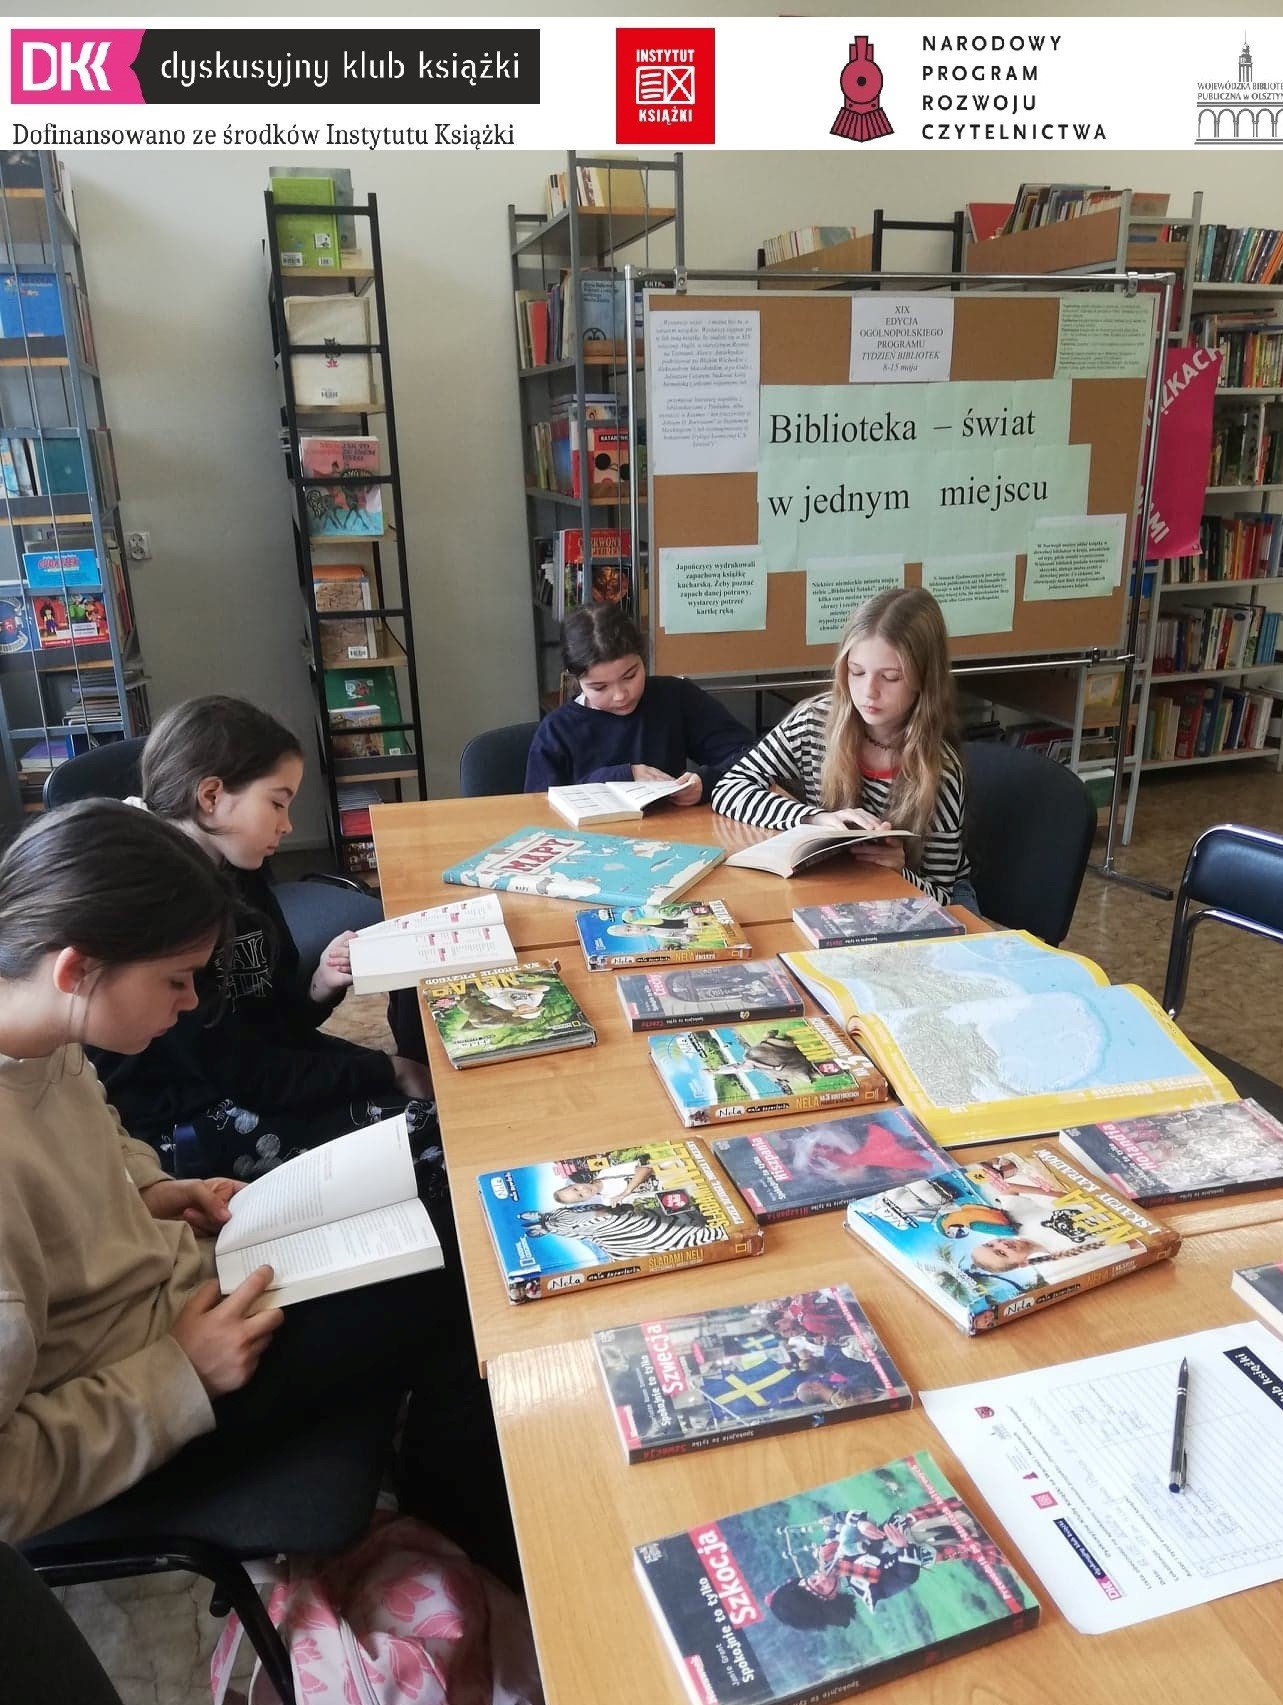 uczniowie w bibliotece szkolnej podczas spotkania klubowego DKK, na stolikach leżą książki, uczniowie siedzą na krzesłach przy stoliku, w tle regały biblioteczne